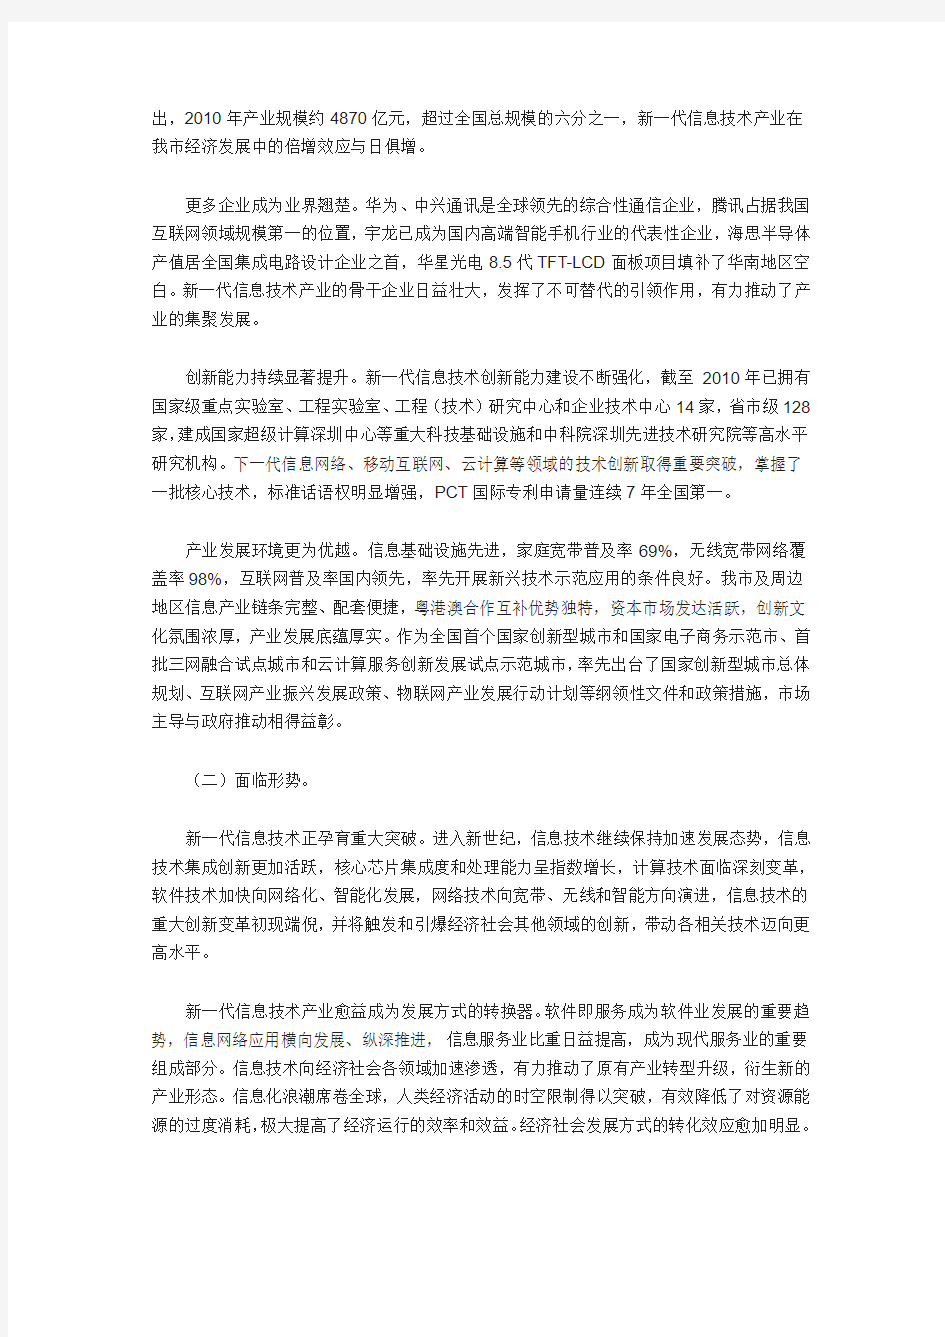 深圳新一代信息技术产业振兴发展规划(2011—2015年)